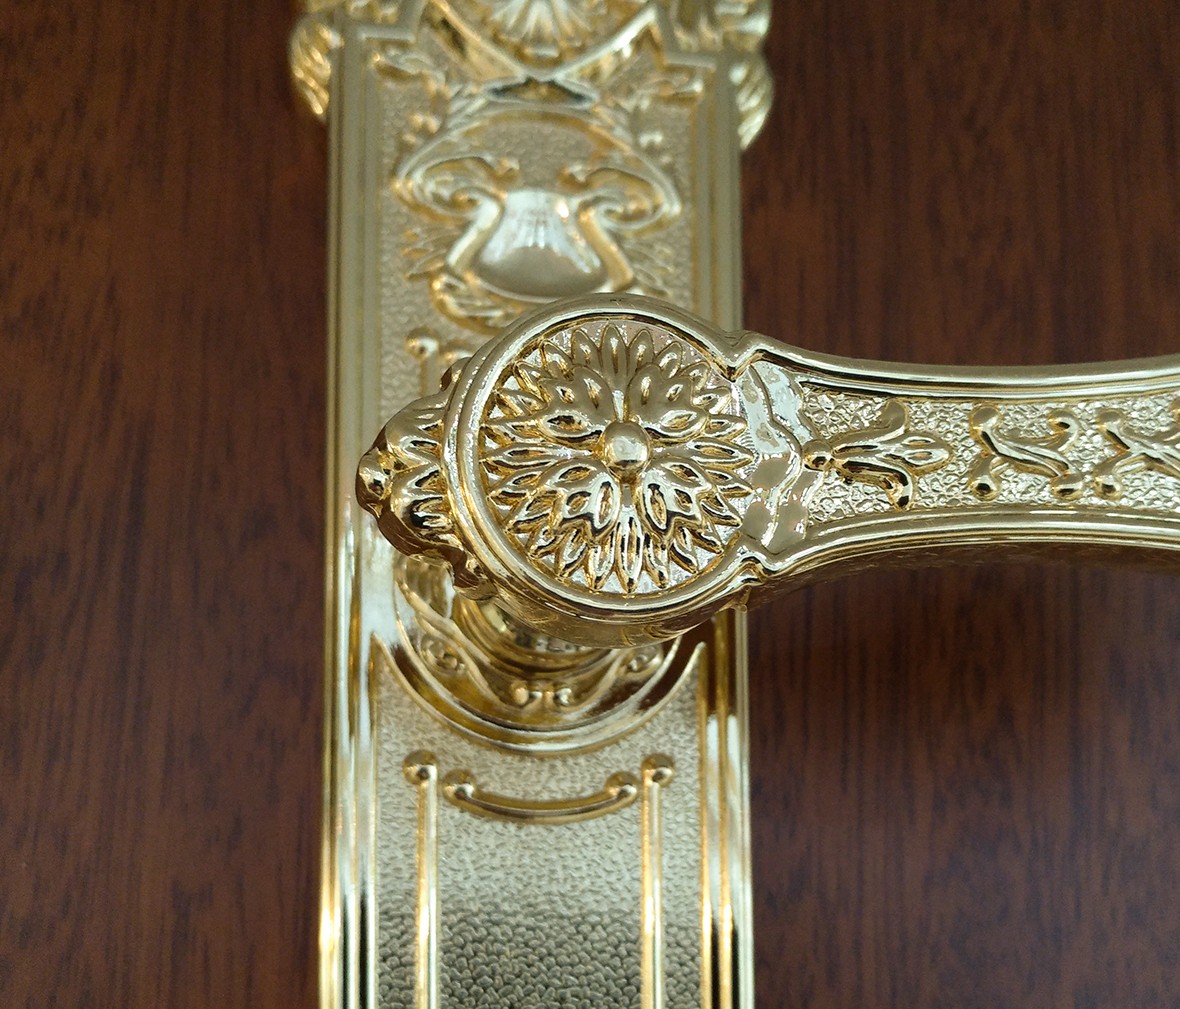 晾霸五金 米开朗8550-815KGP型号门锁 锌合金材质 优质门锁 情景 细节